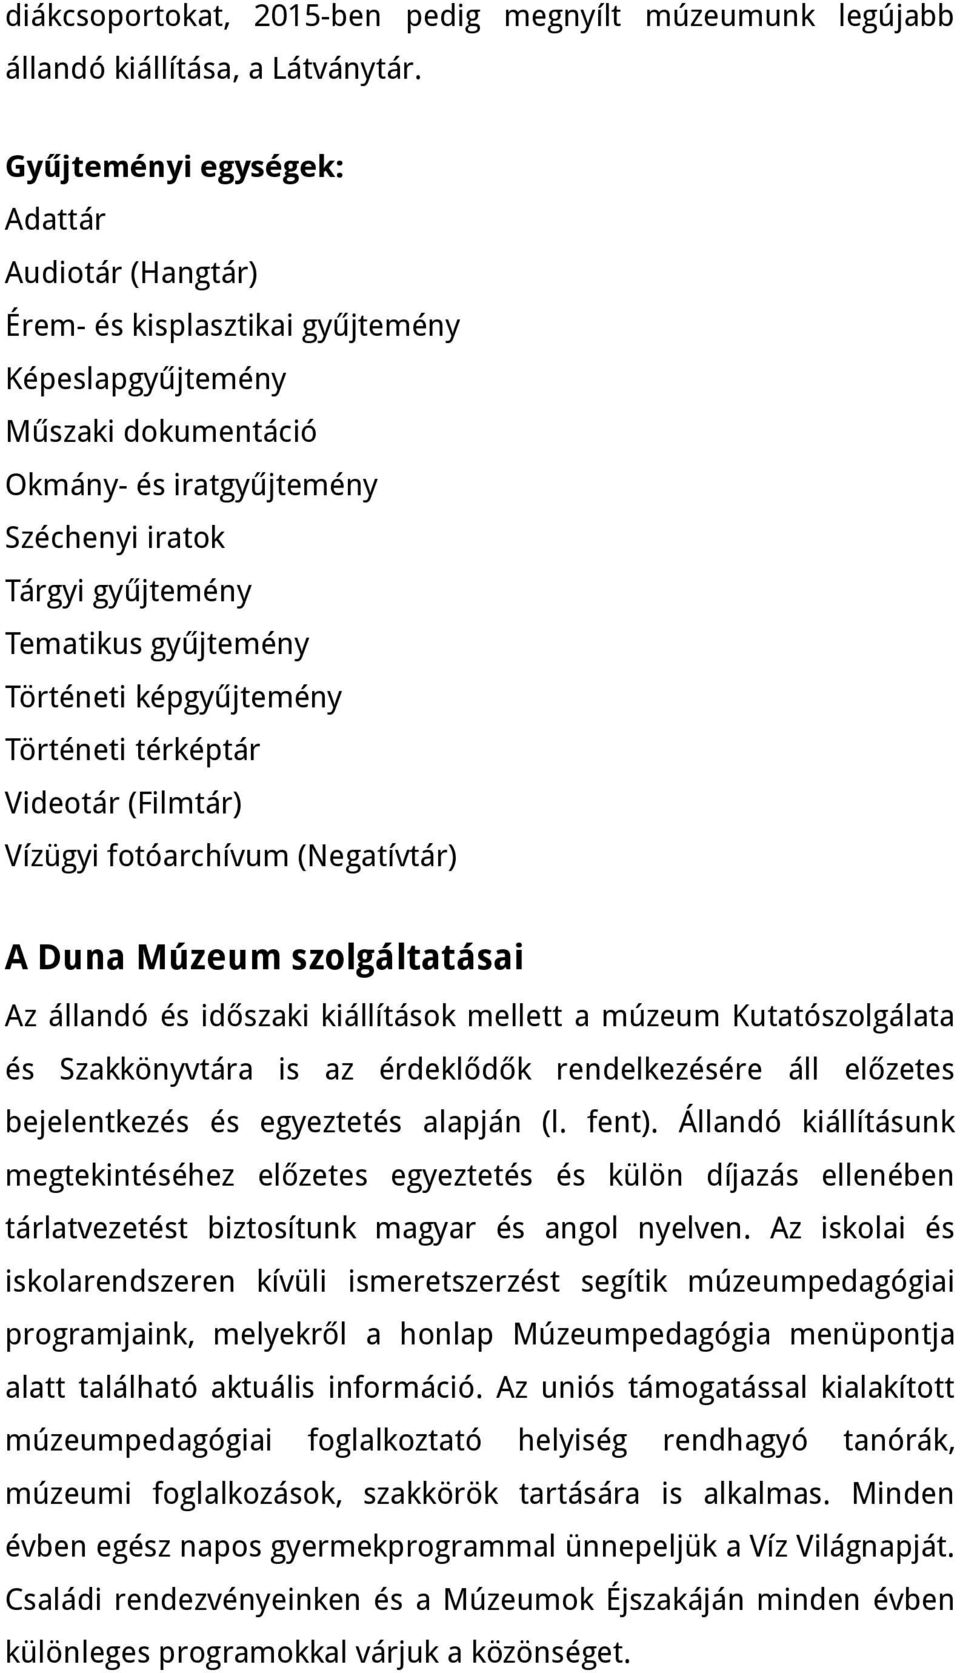 gyűjtemény Történeti képgyűjtemény Történeti térképtár Videotár (Filmtár) Vízügyi fotóarchívum (Negatívtár) A Duna Múzeum szolgáltatásai Az állandó és időszaki kiállítások mellett a múzeum